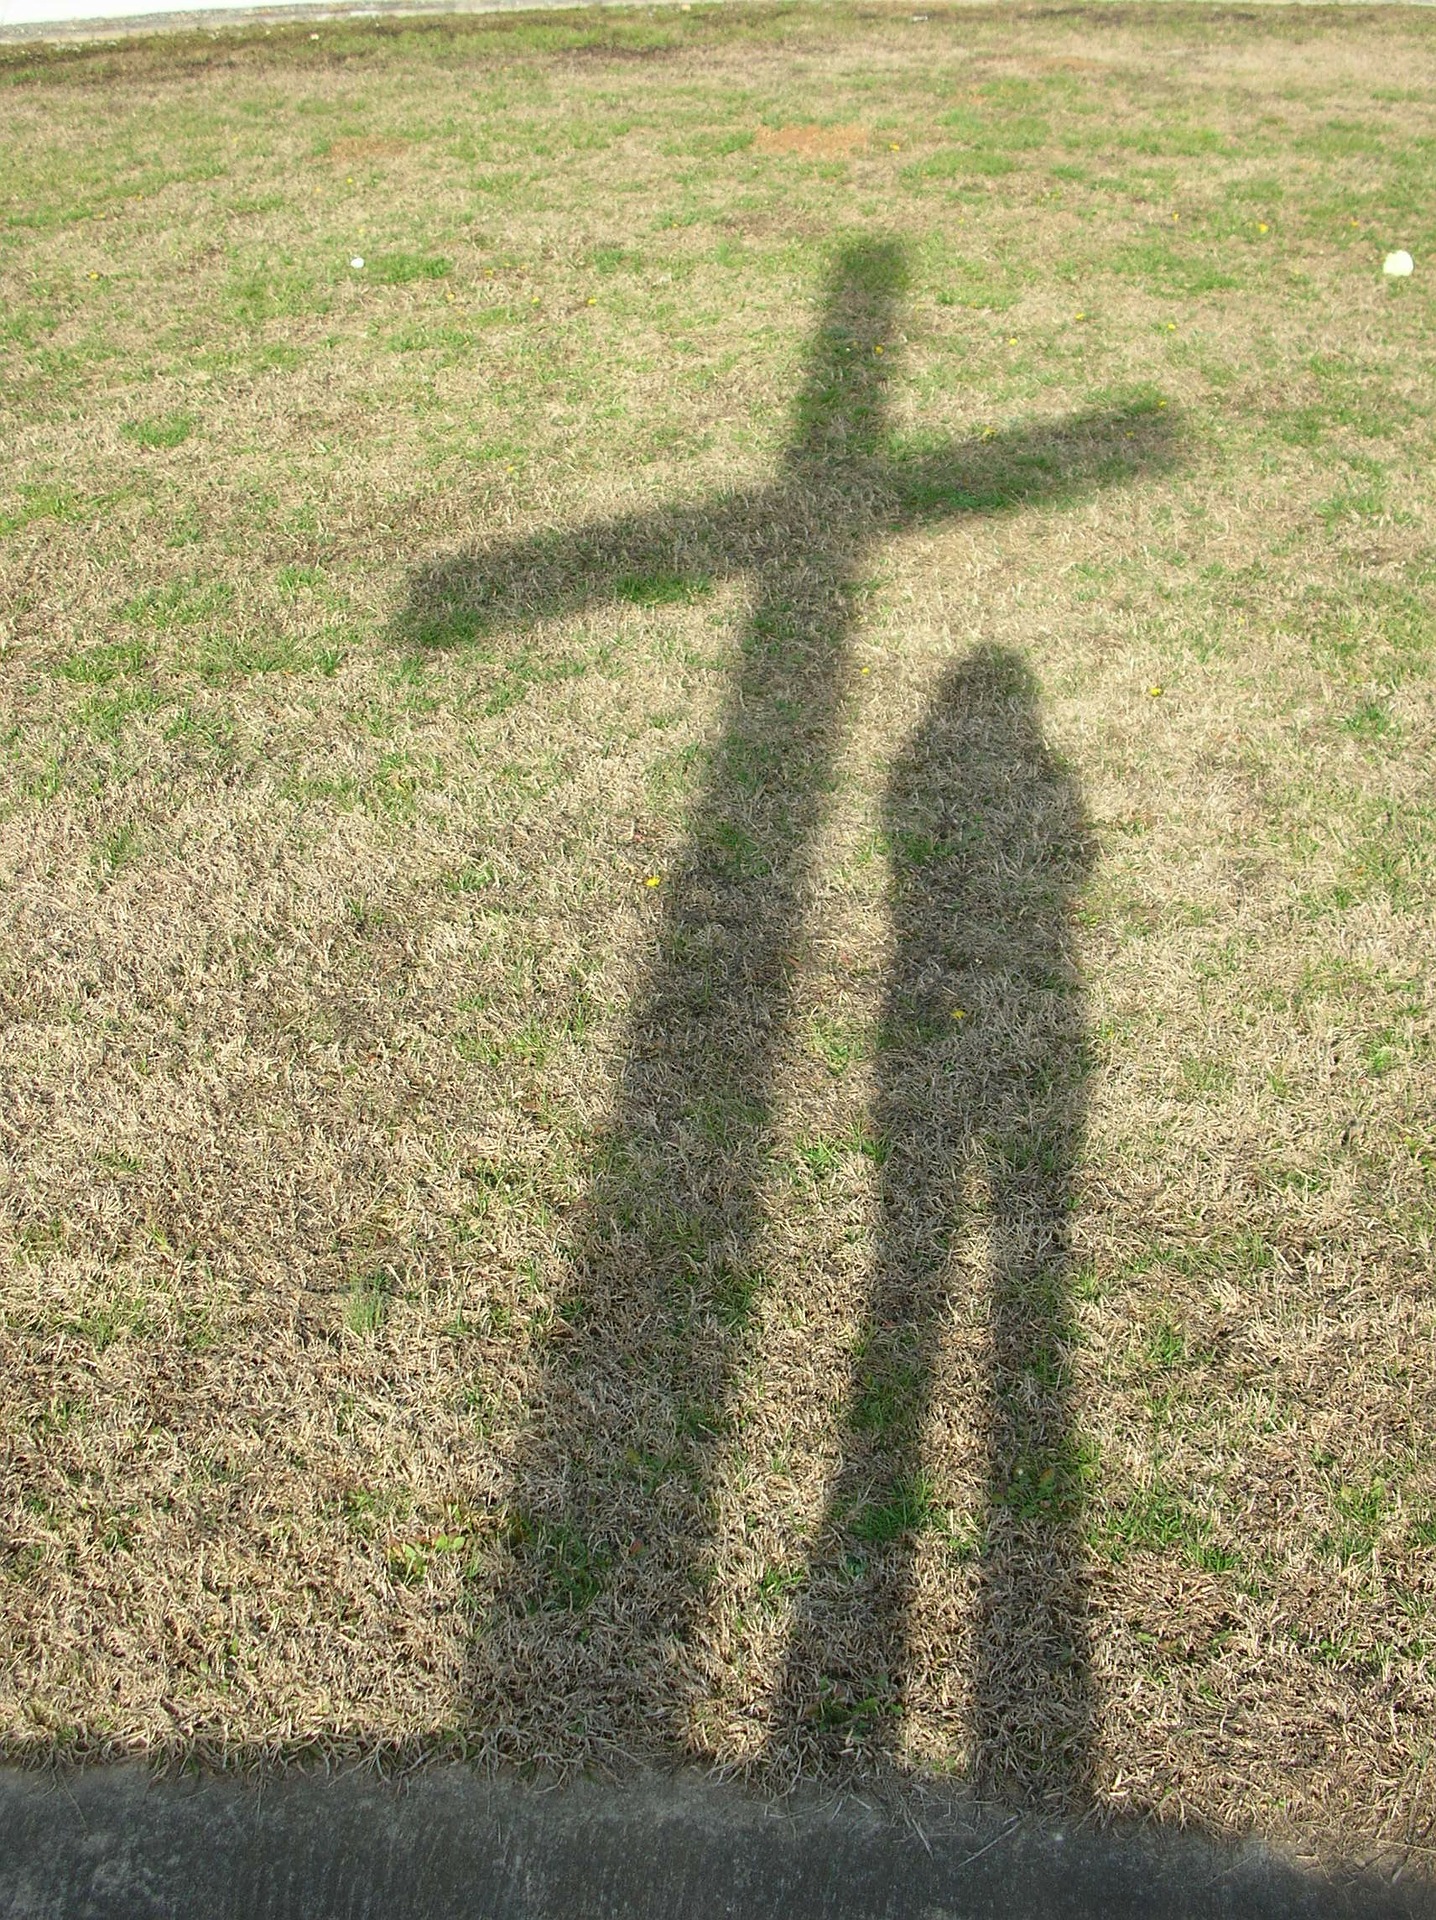 Schatten (c) Bild von amalgamate auf Pixabay